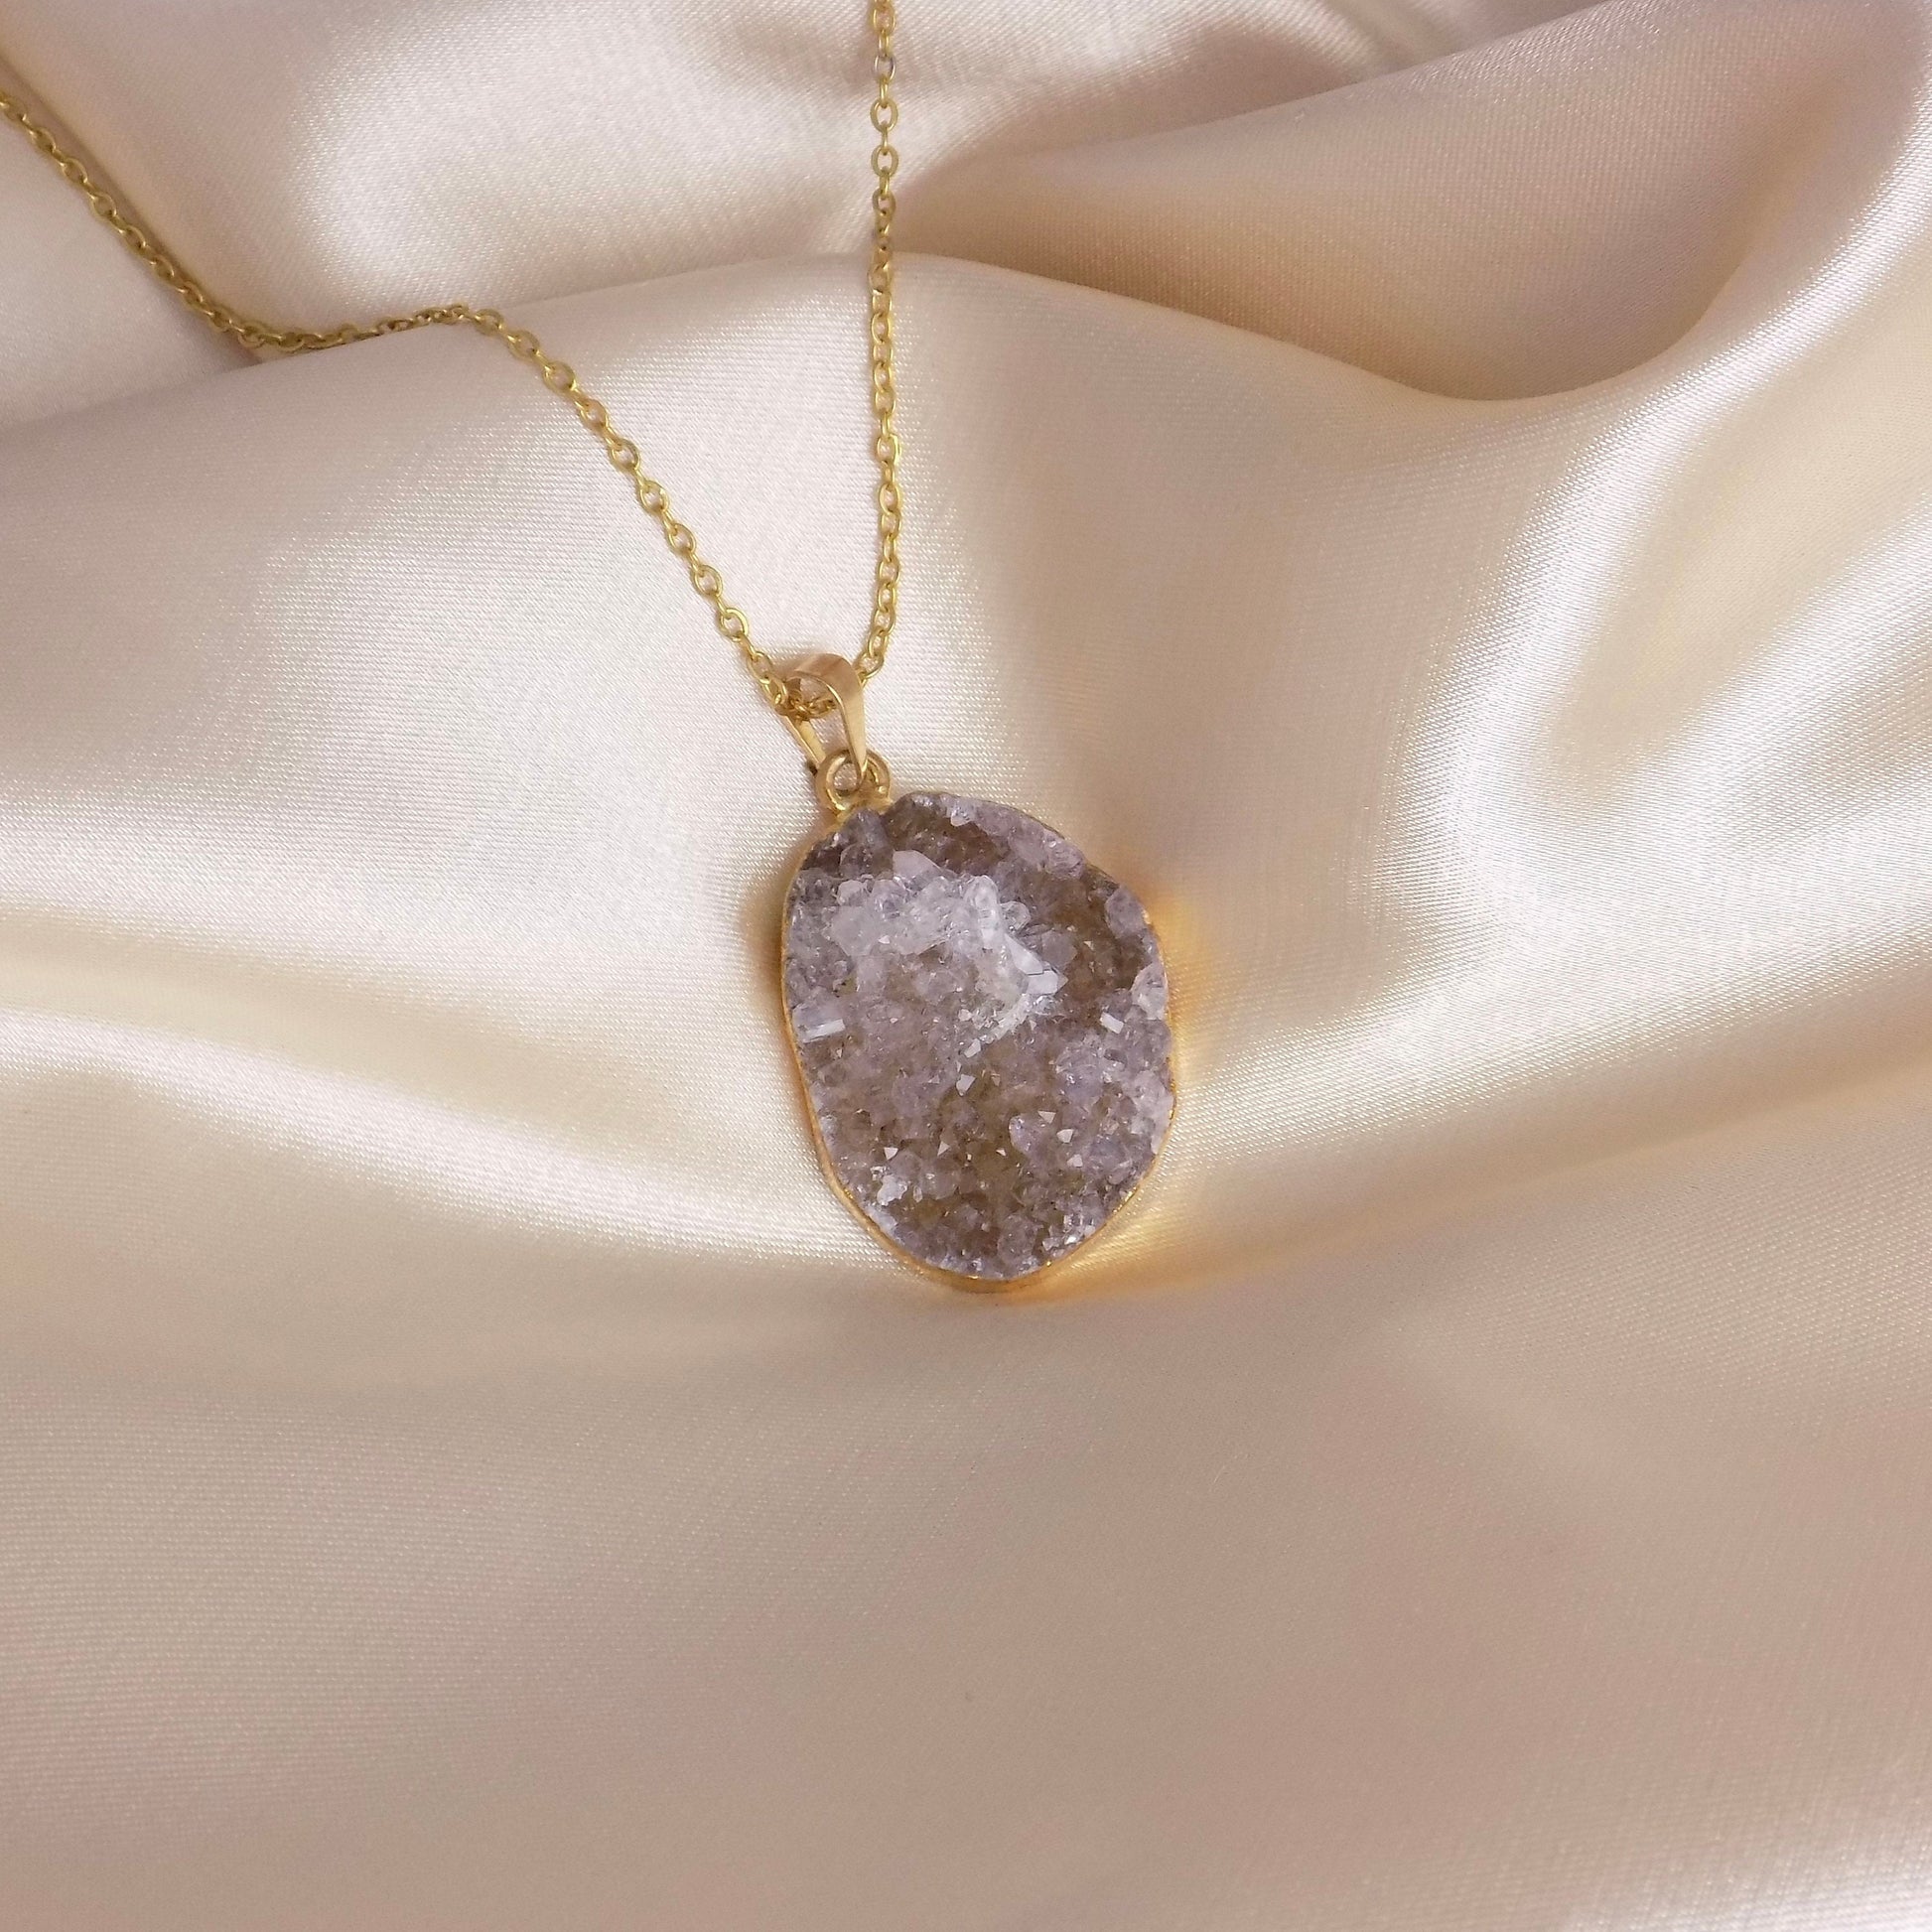 Unique Druzy Pendant Necklace Gold, Amethyst Necklaces, Christmas Gift Women, R15-142